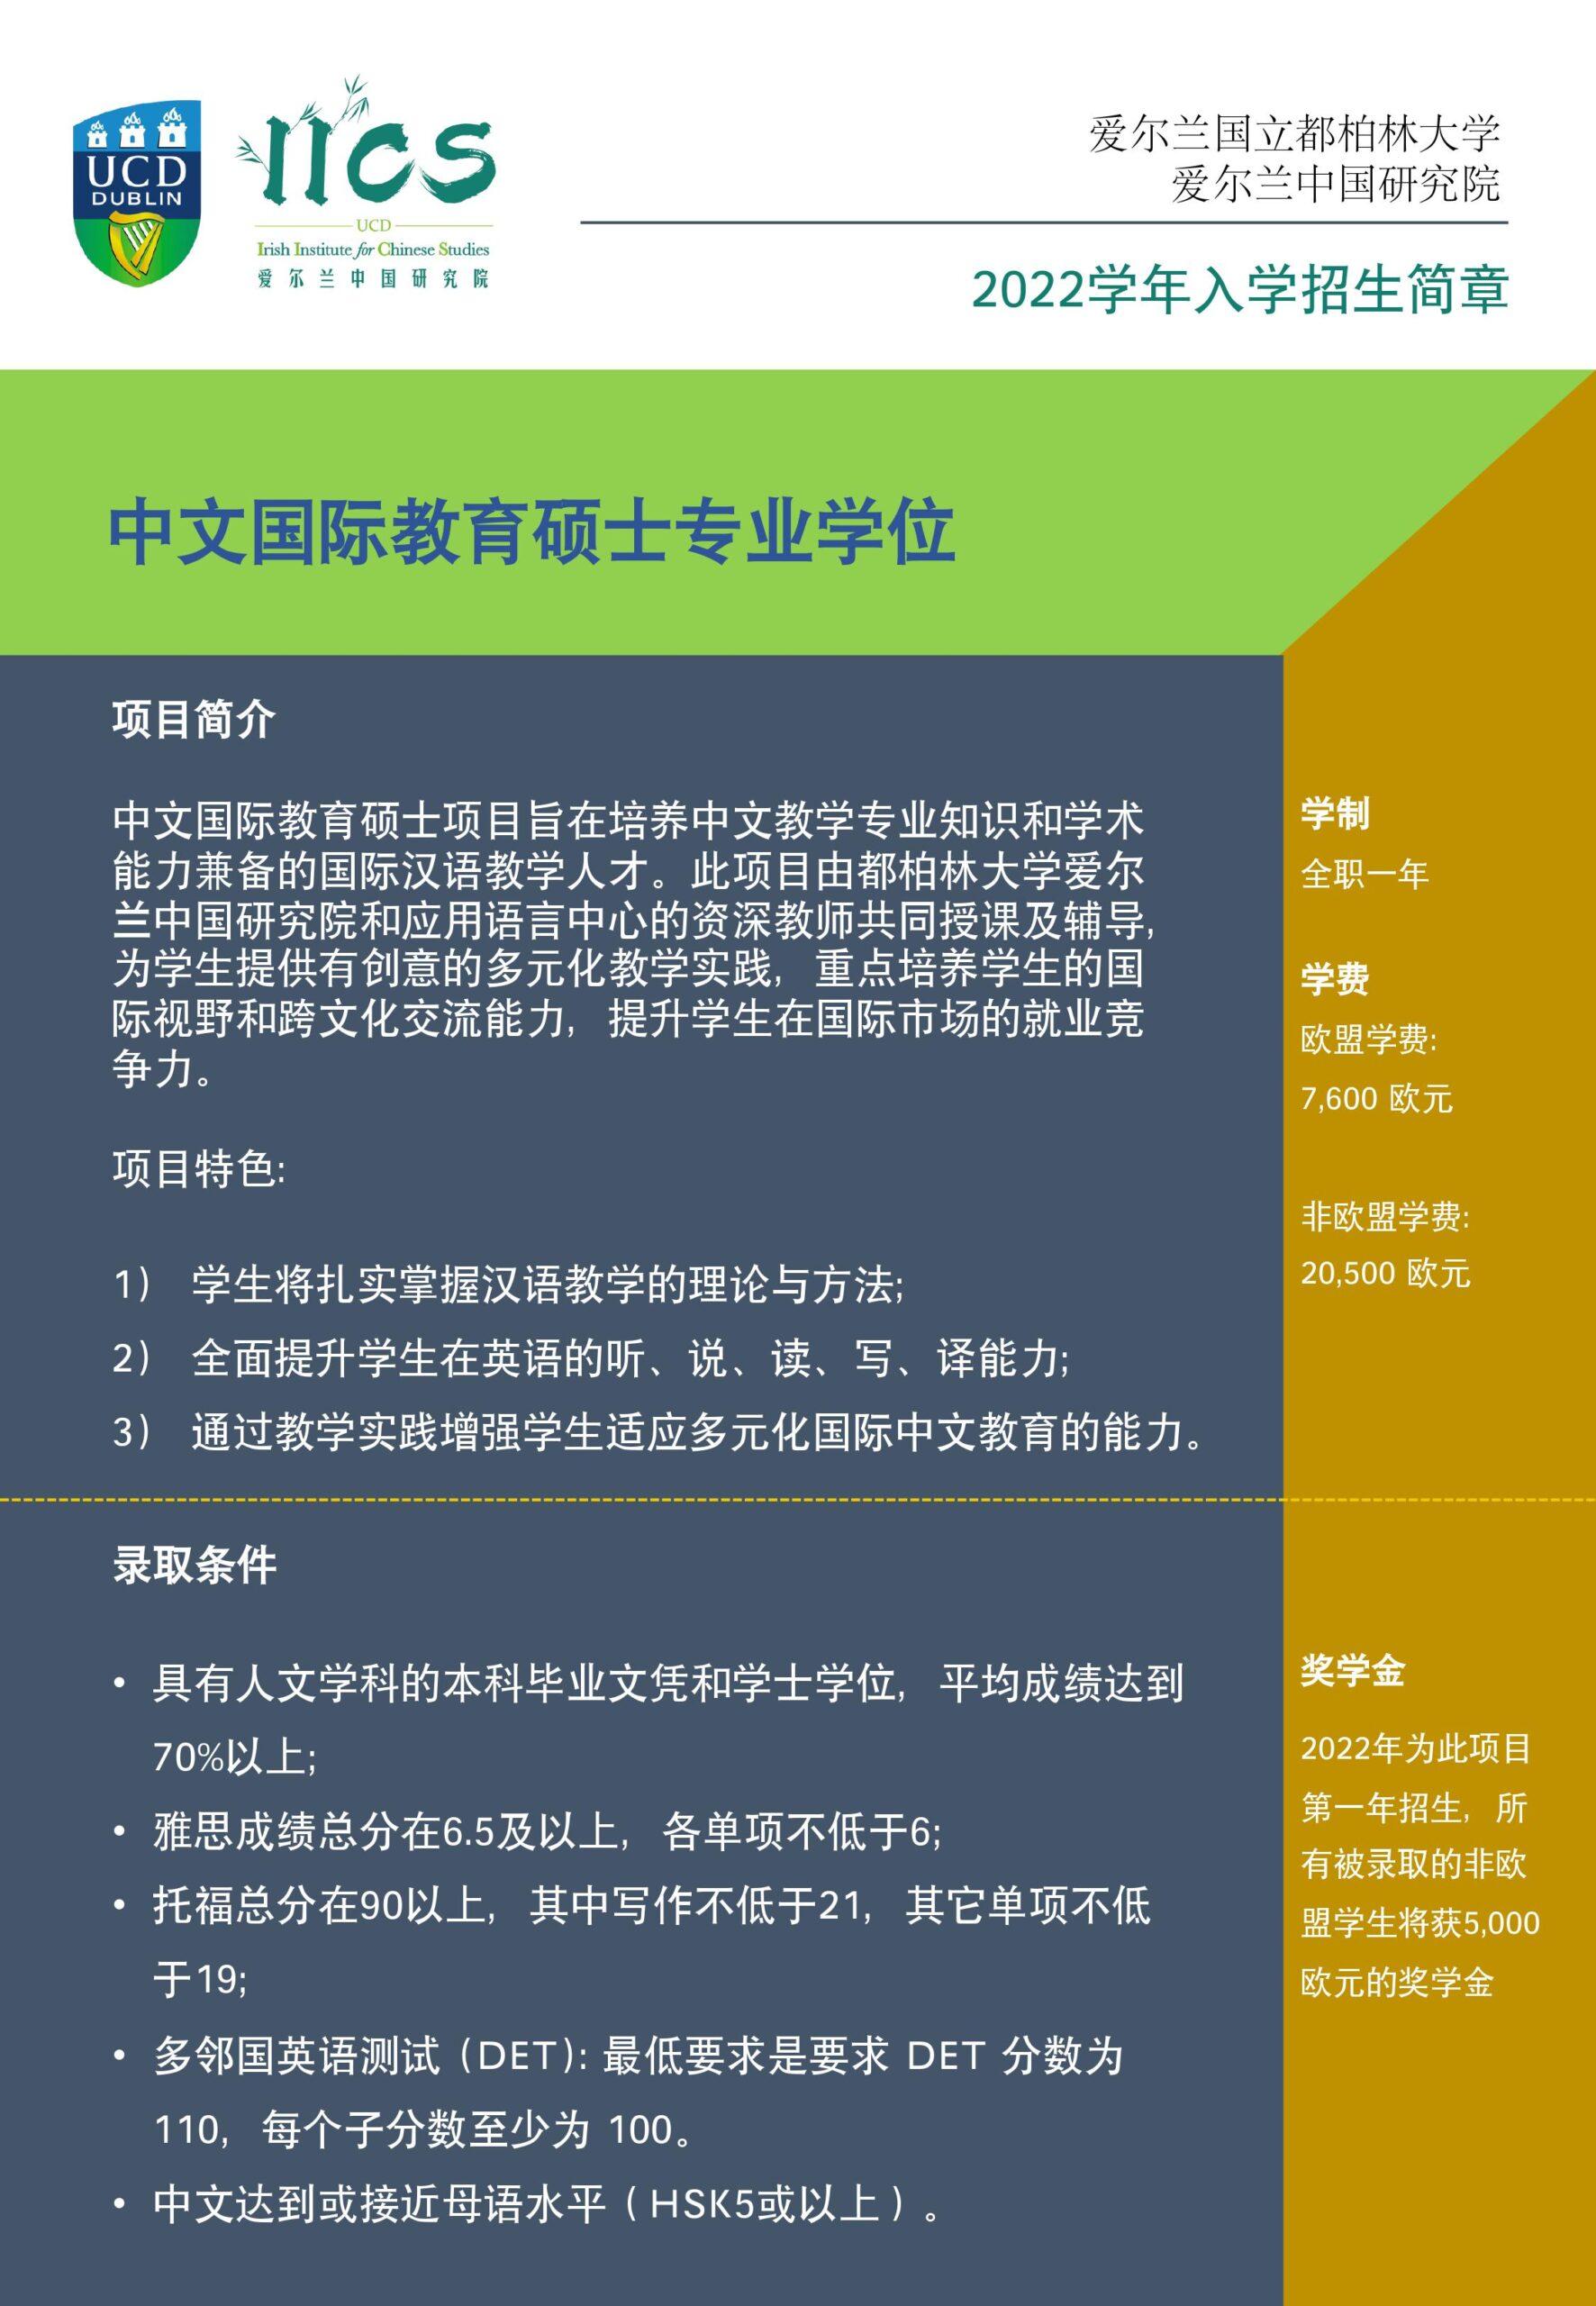 中文国际教育硕士专业学位——2022学年入学招生简章